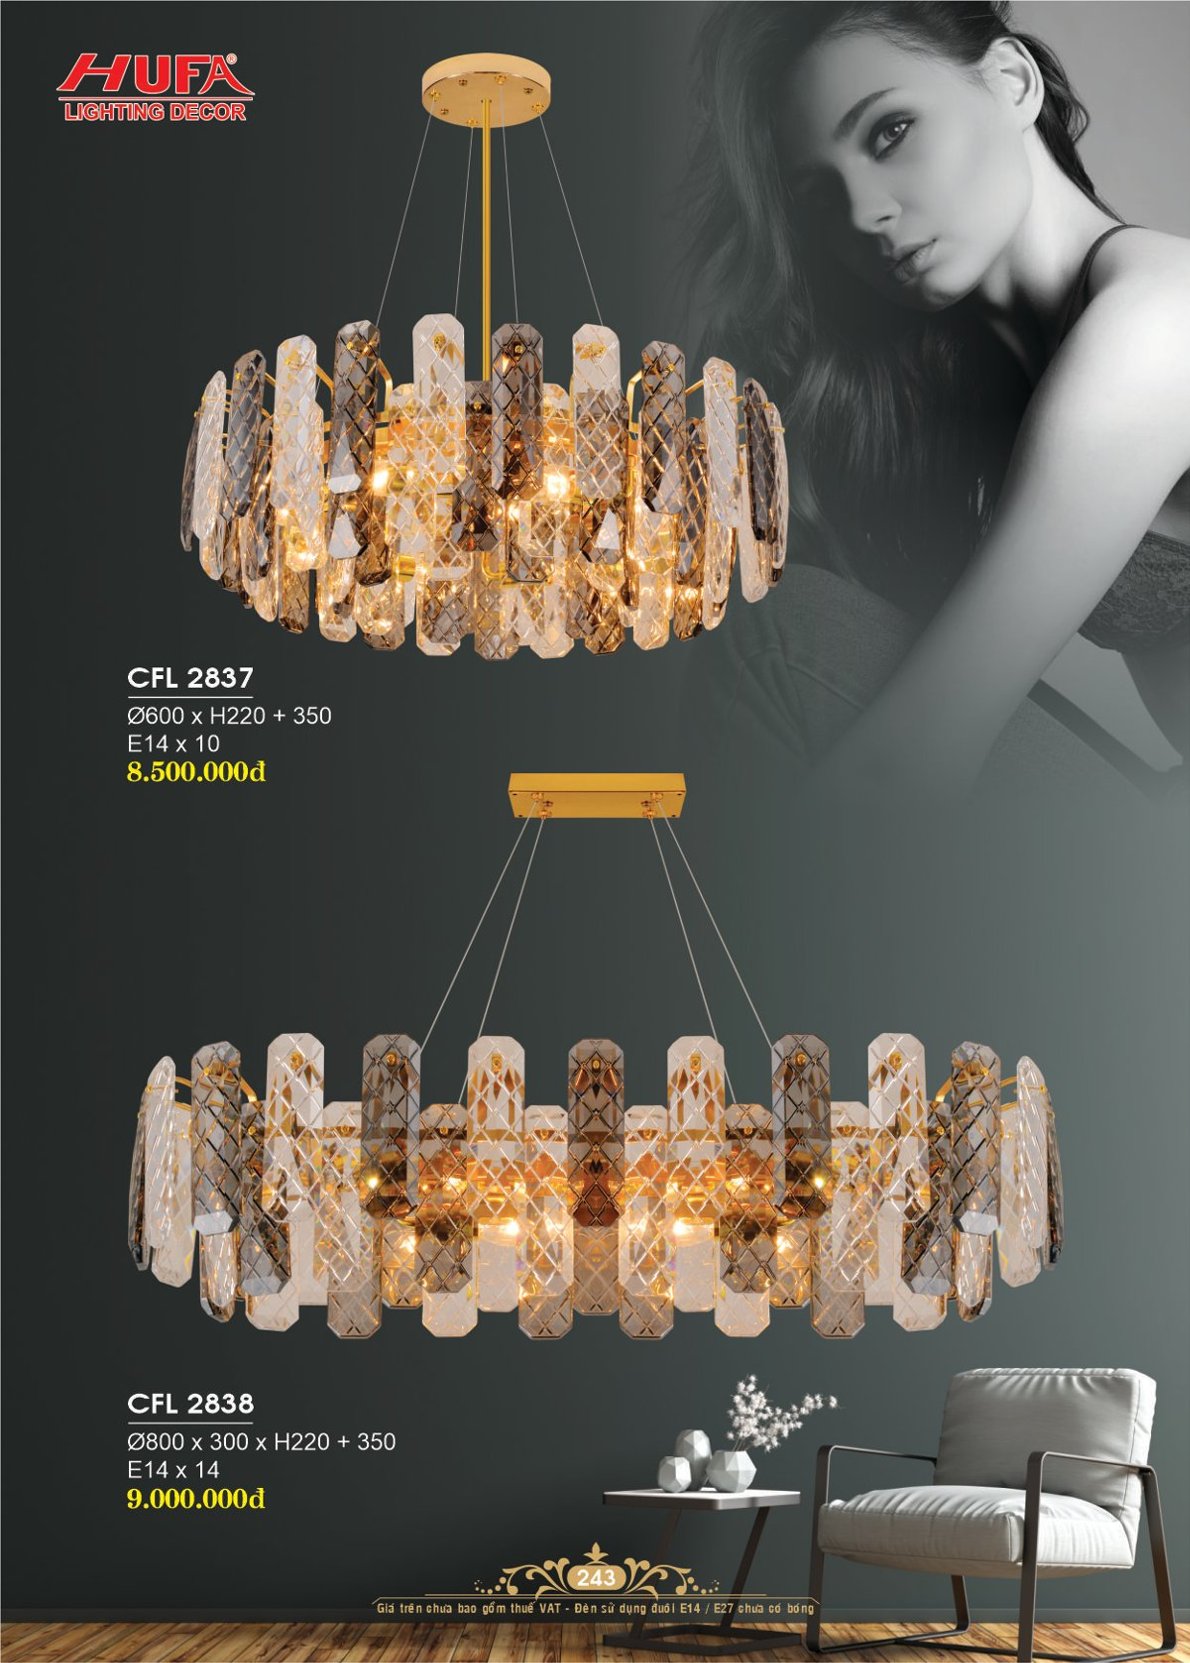 Đèn chùm pha lê, đèn trang trí Hufa CFL 2811/800L cao cấp, giá rẻ bảo hành lâu dài, hỗ trợ lắp đặt, giao hàng toàn quốc. Đèn pha lê Hufa được bảo trì trọn đời